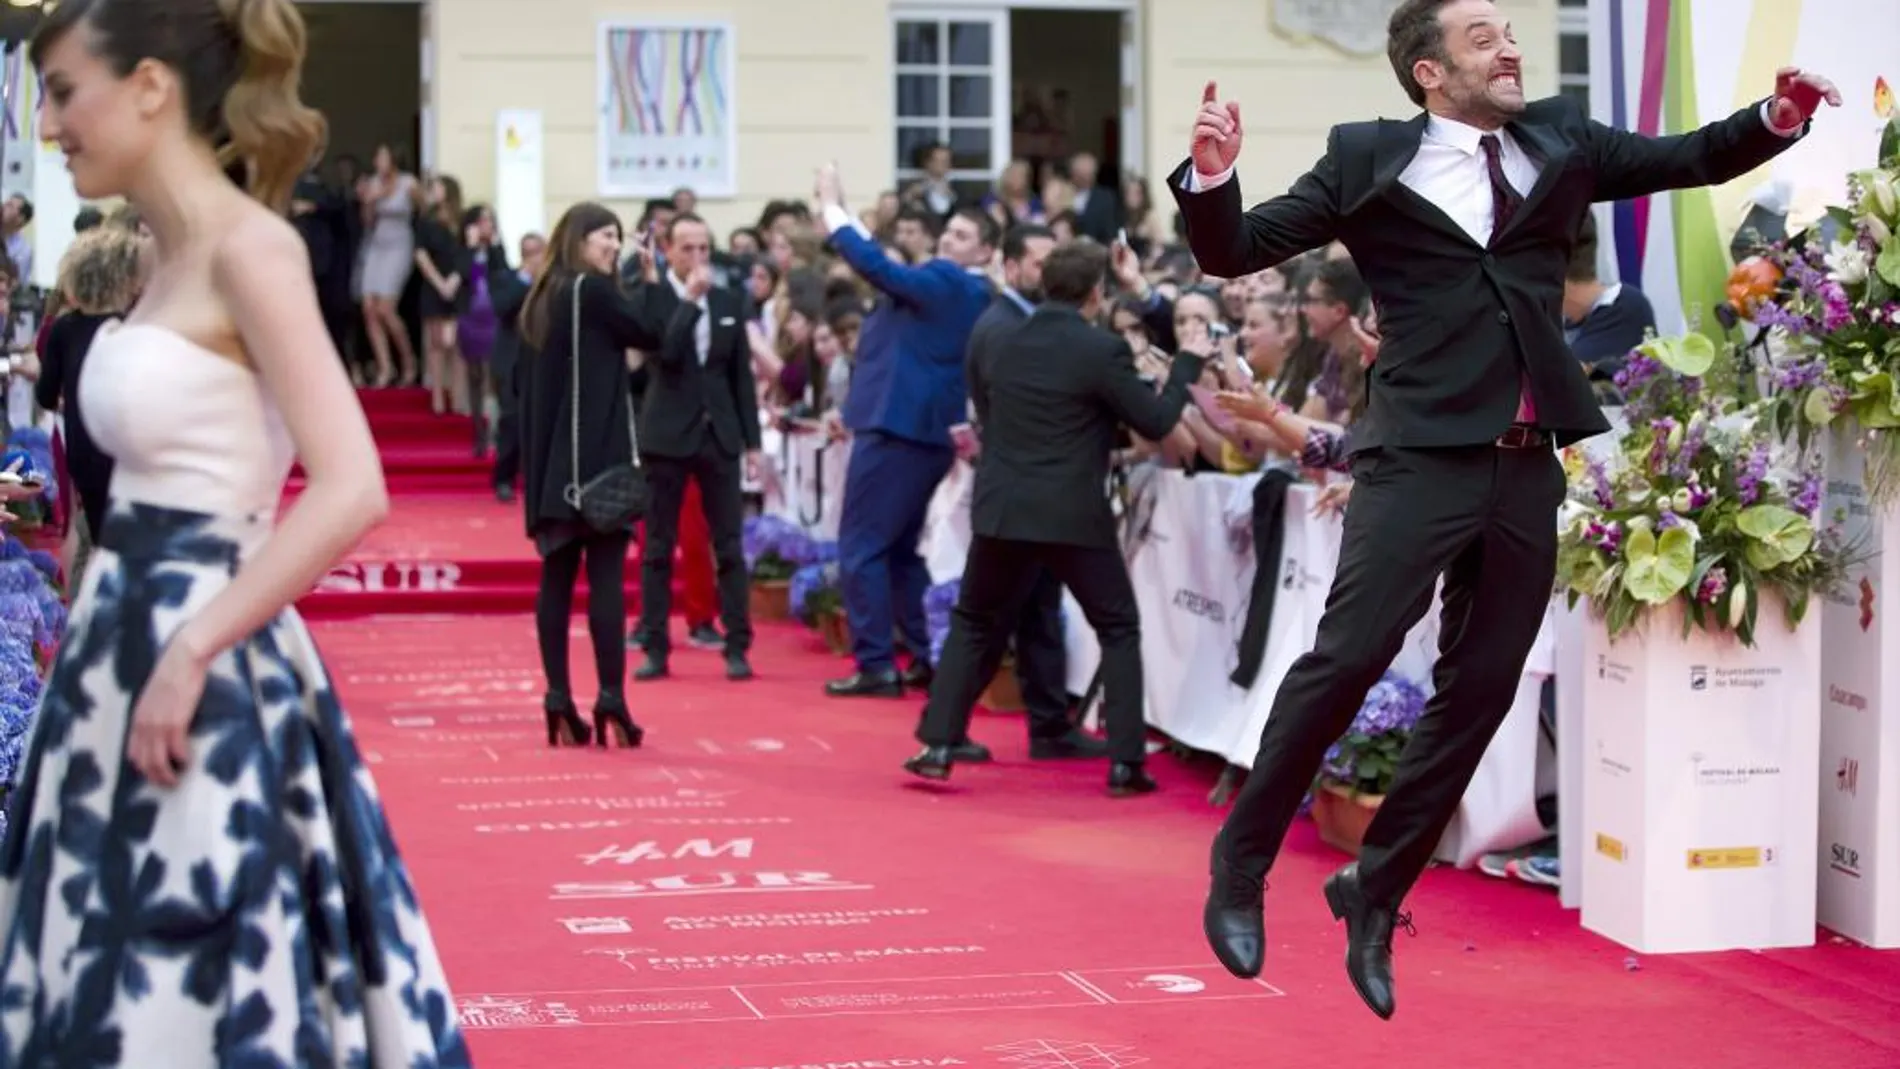 El director y actor Daniel Guzman (d), ganador de la Biznaga de Oro por su película "A cambio de nada", a su llegada a la gala de clausura